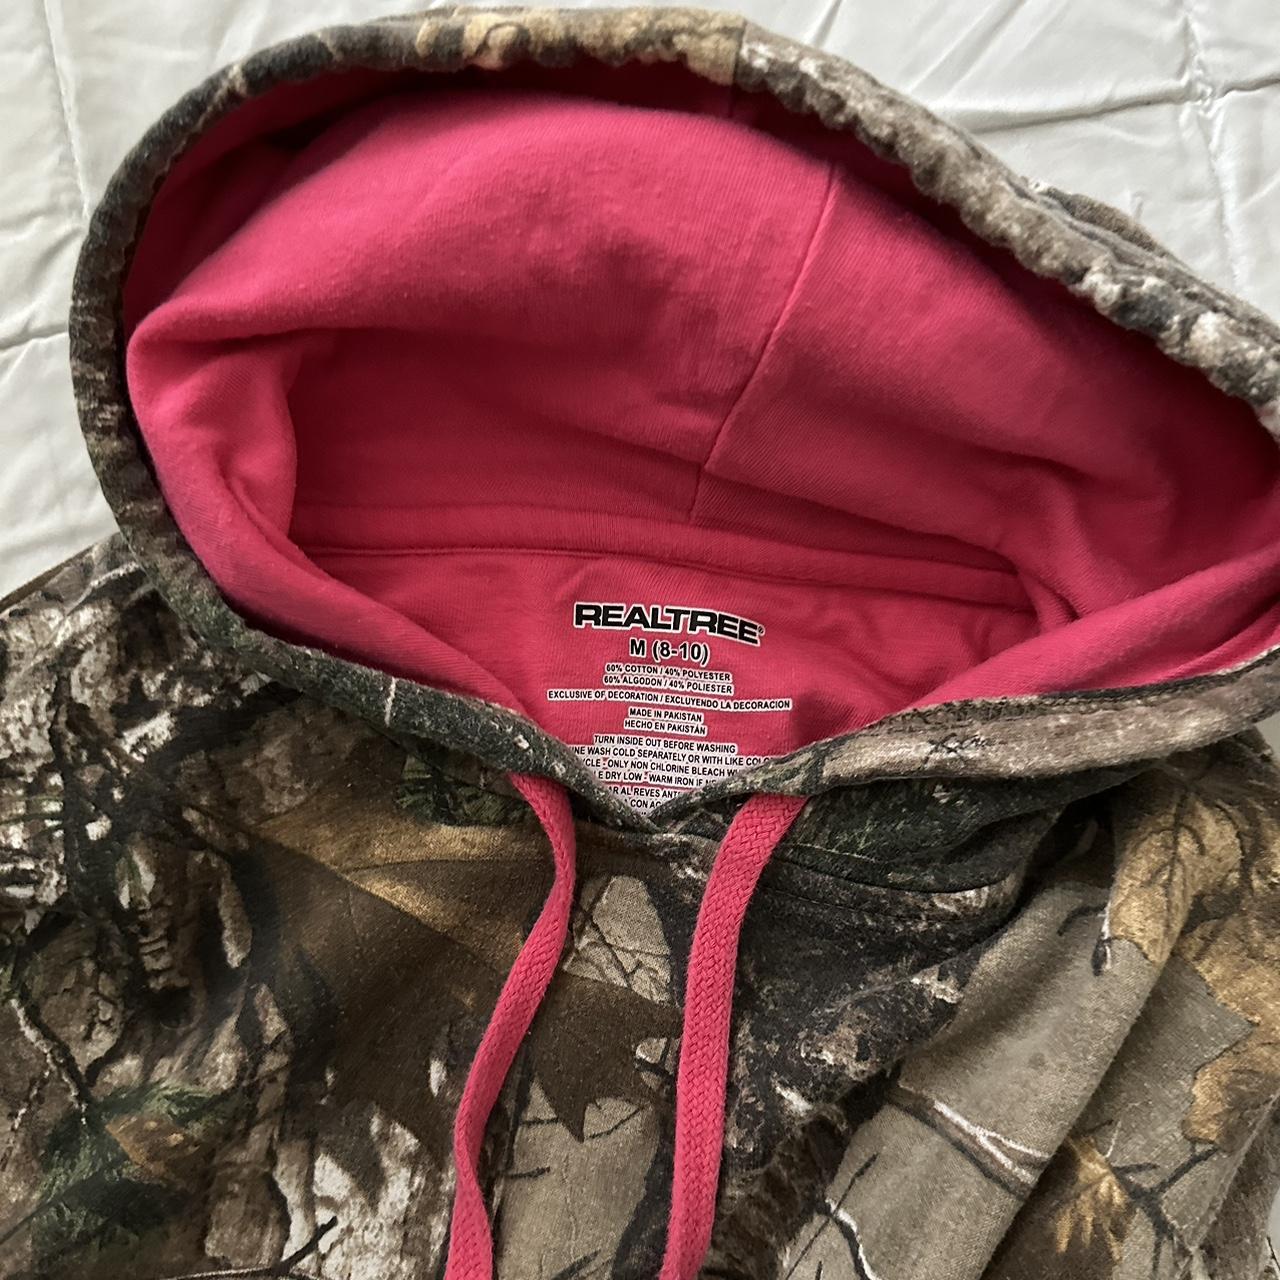 realtree vintage camo print hot pink hoodie size... - Depop